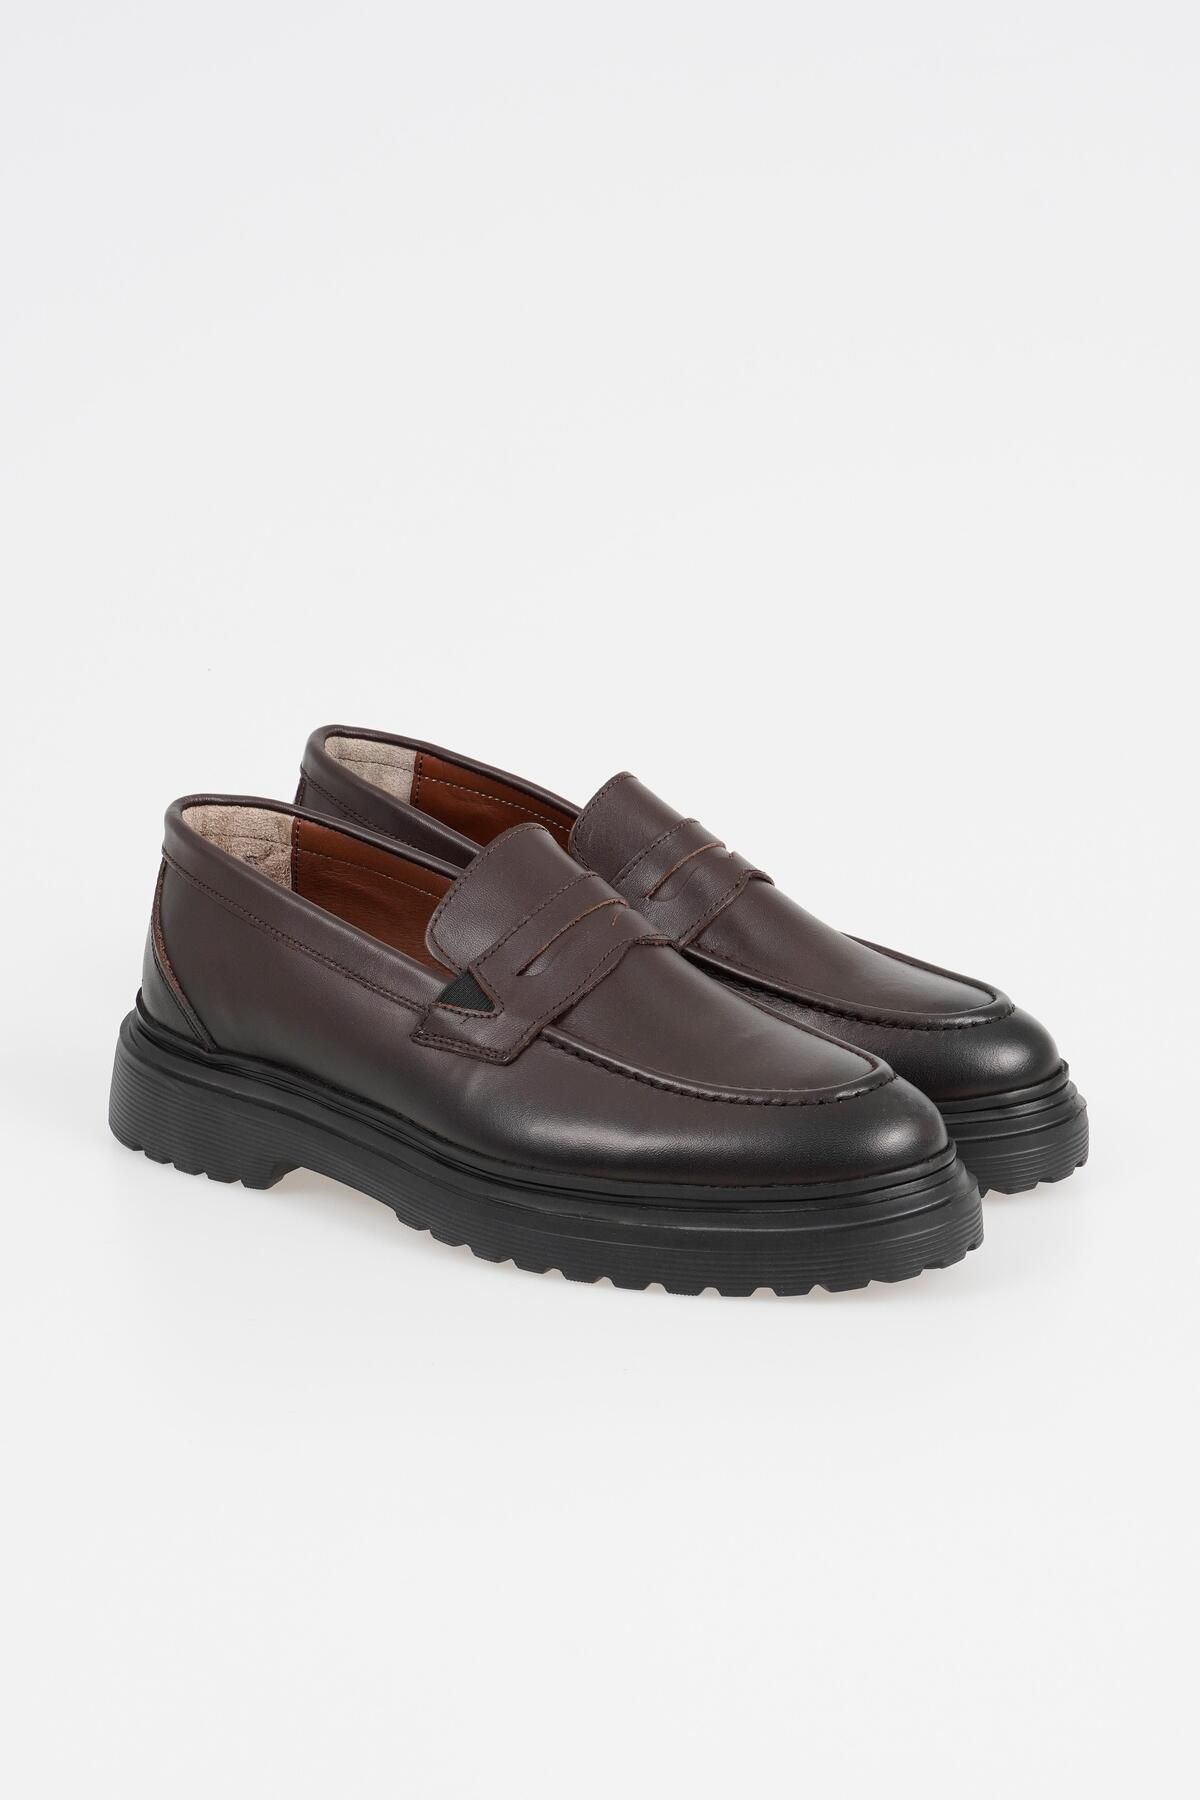 CZ London Hakiki Deri Erkek Loafer Kalın Tabanlı Kolay Giyim Ayakkabı